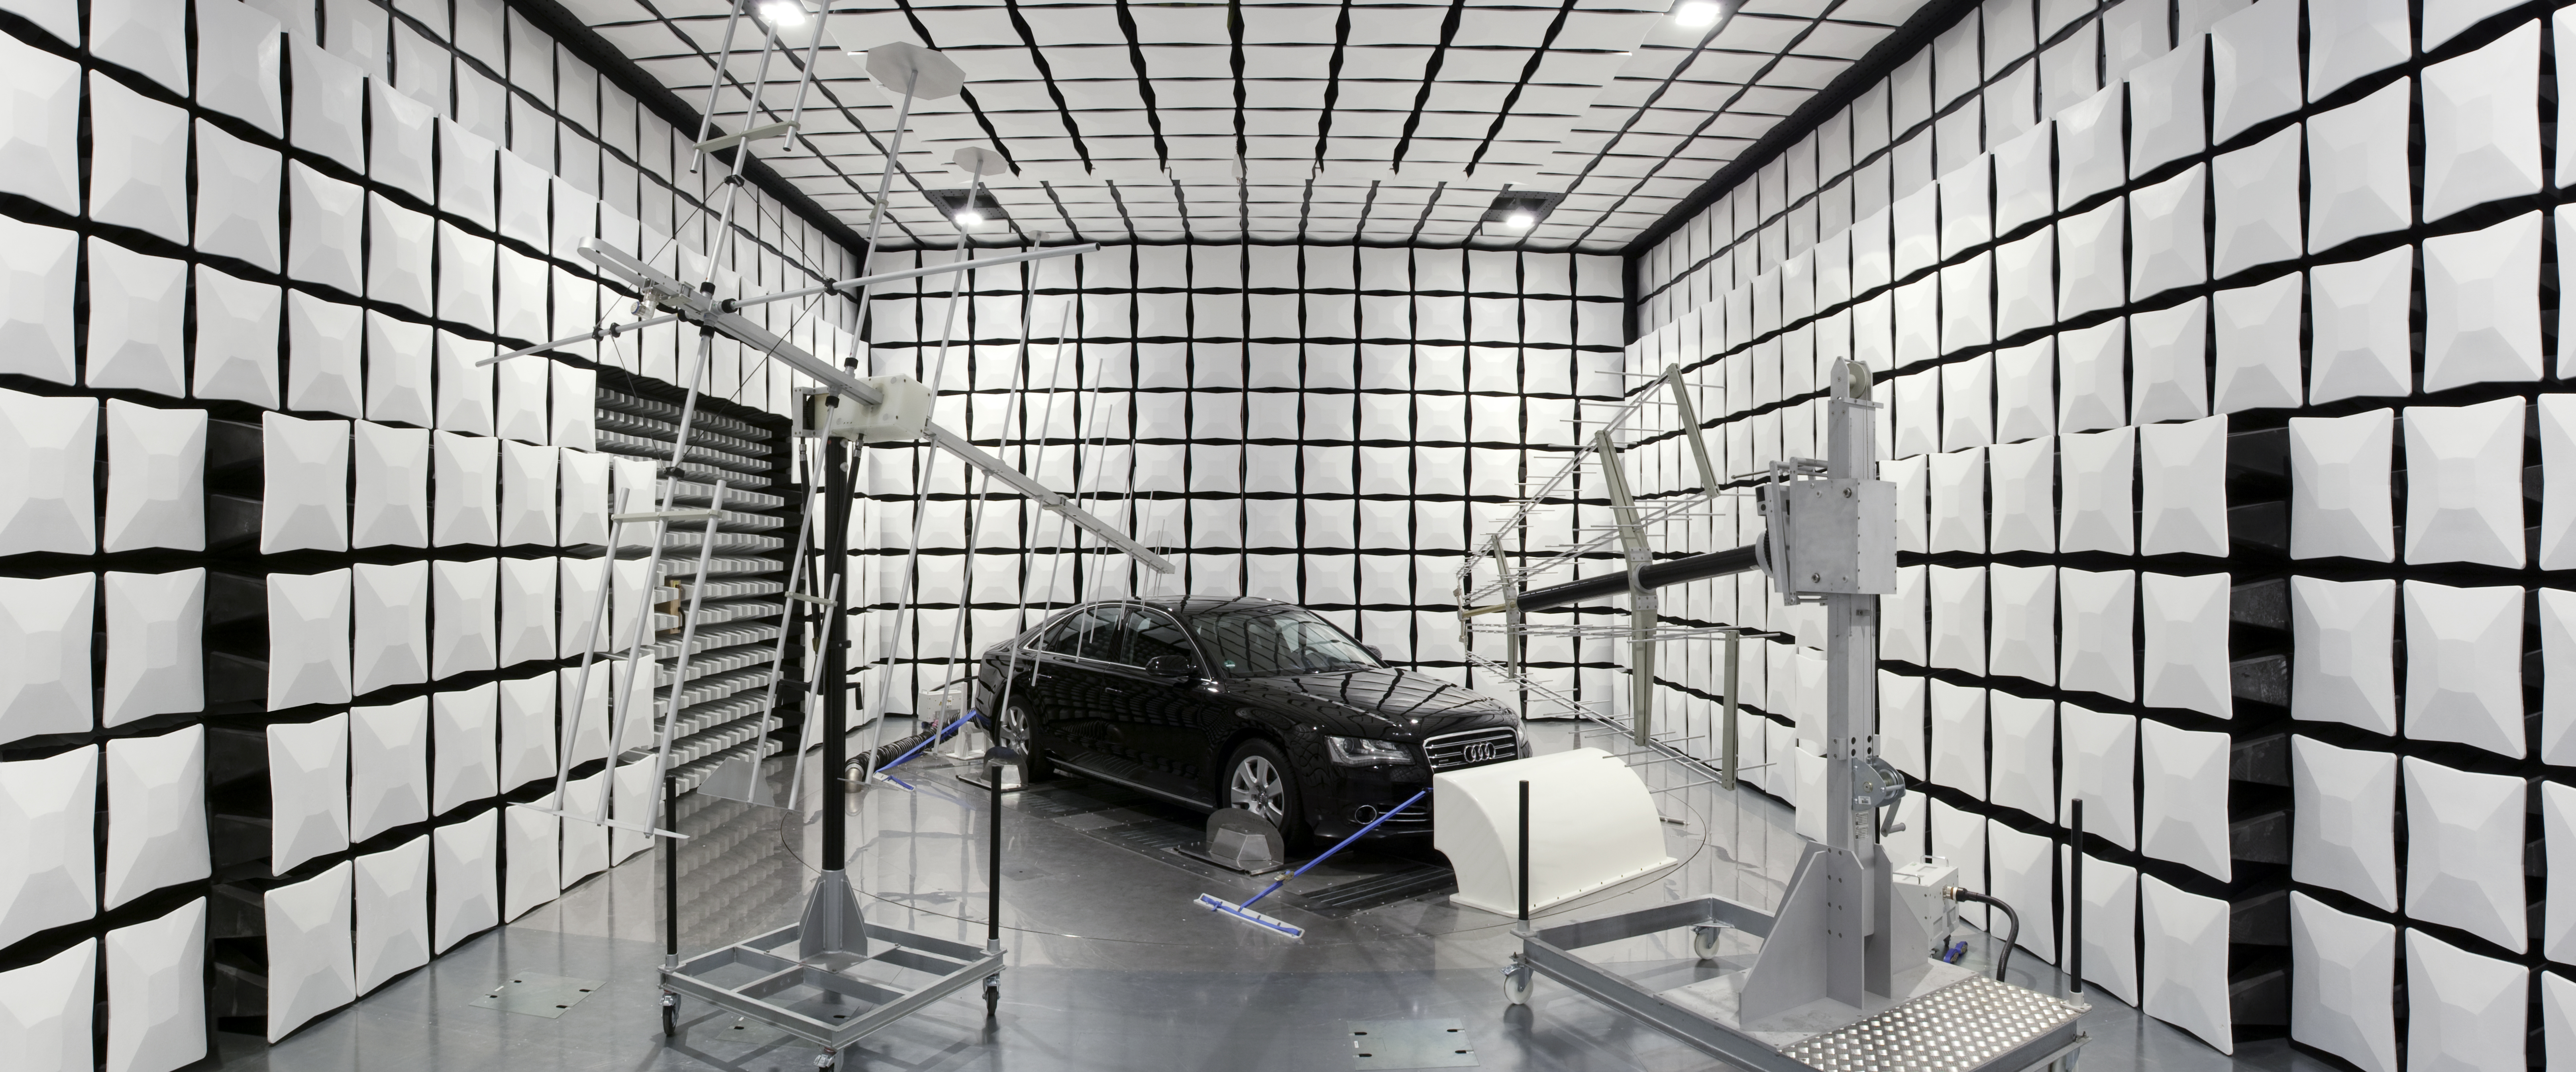 Blick in die EMV Halle mit einem Fahrzeug in der Mitte auf einem Rollenürüfstand